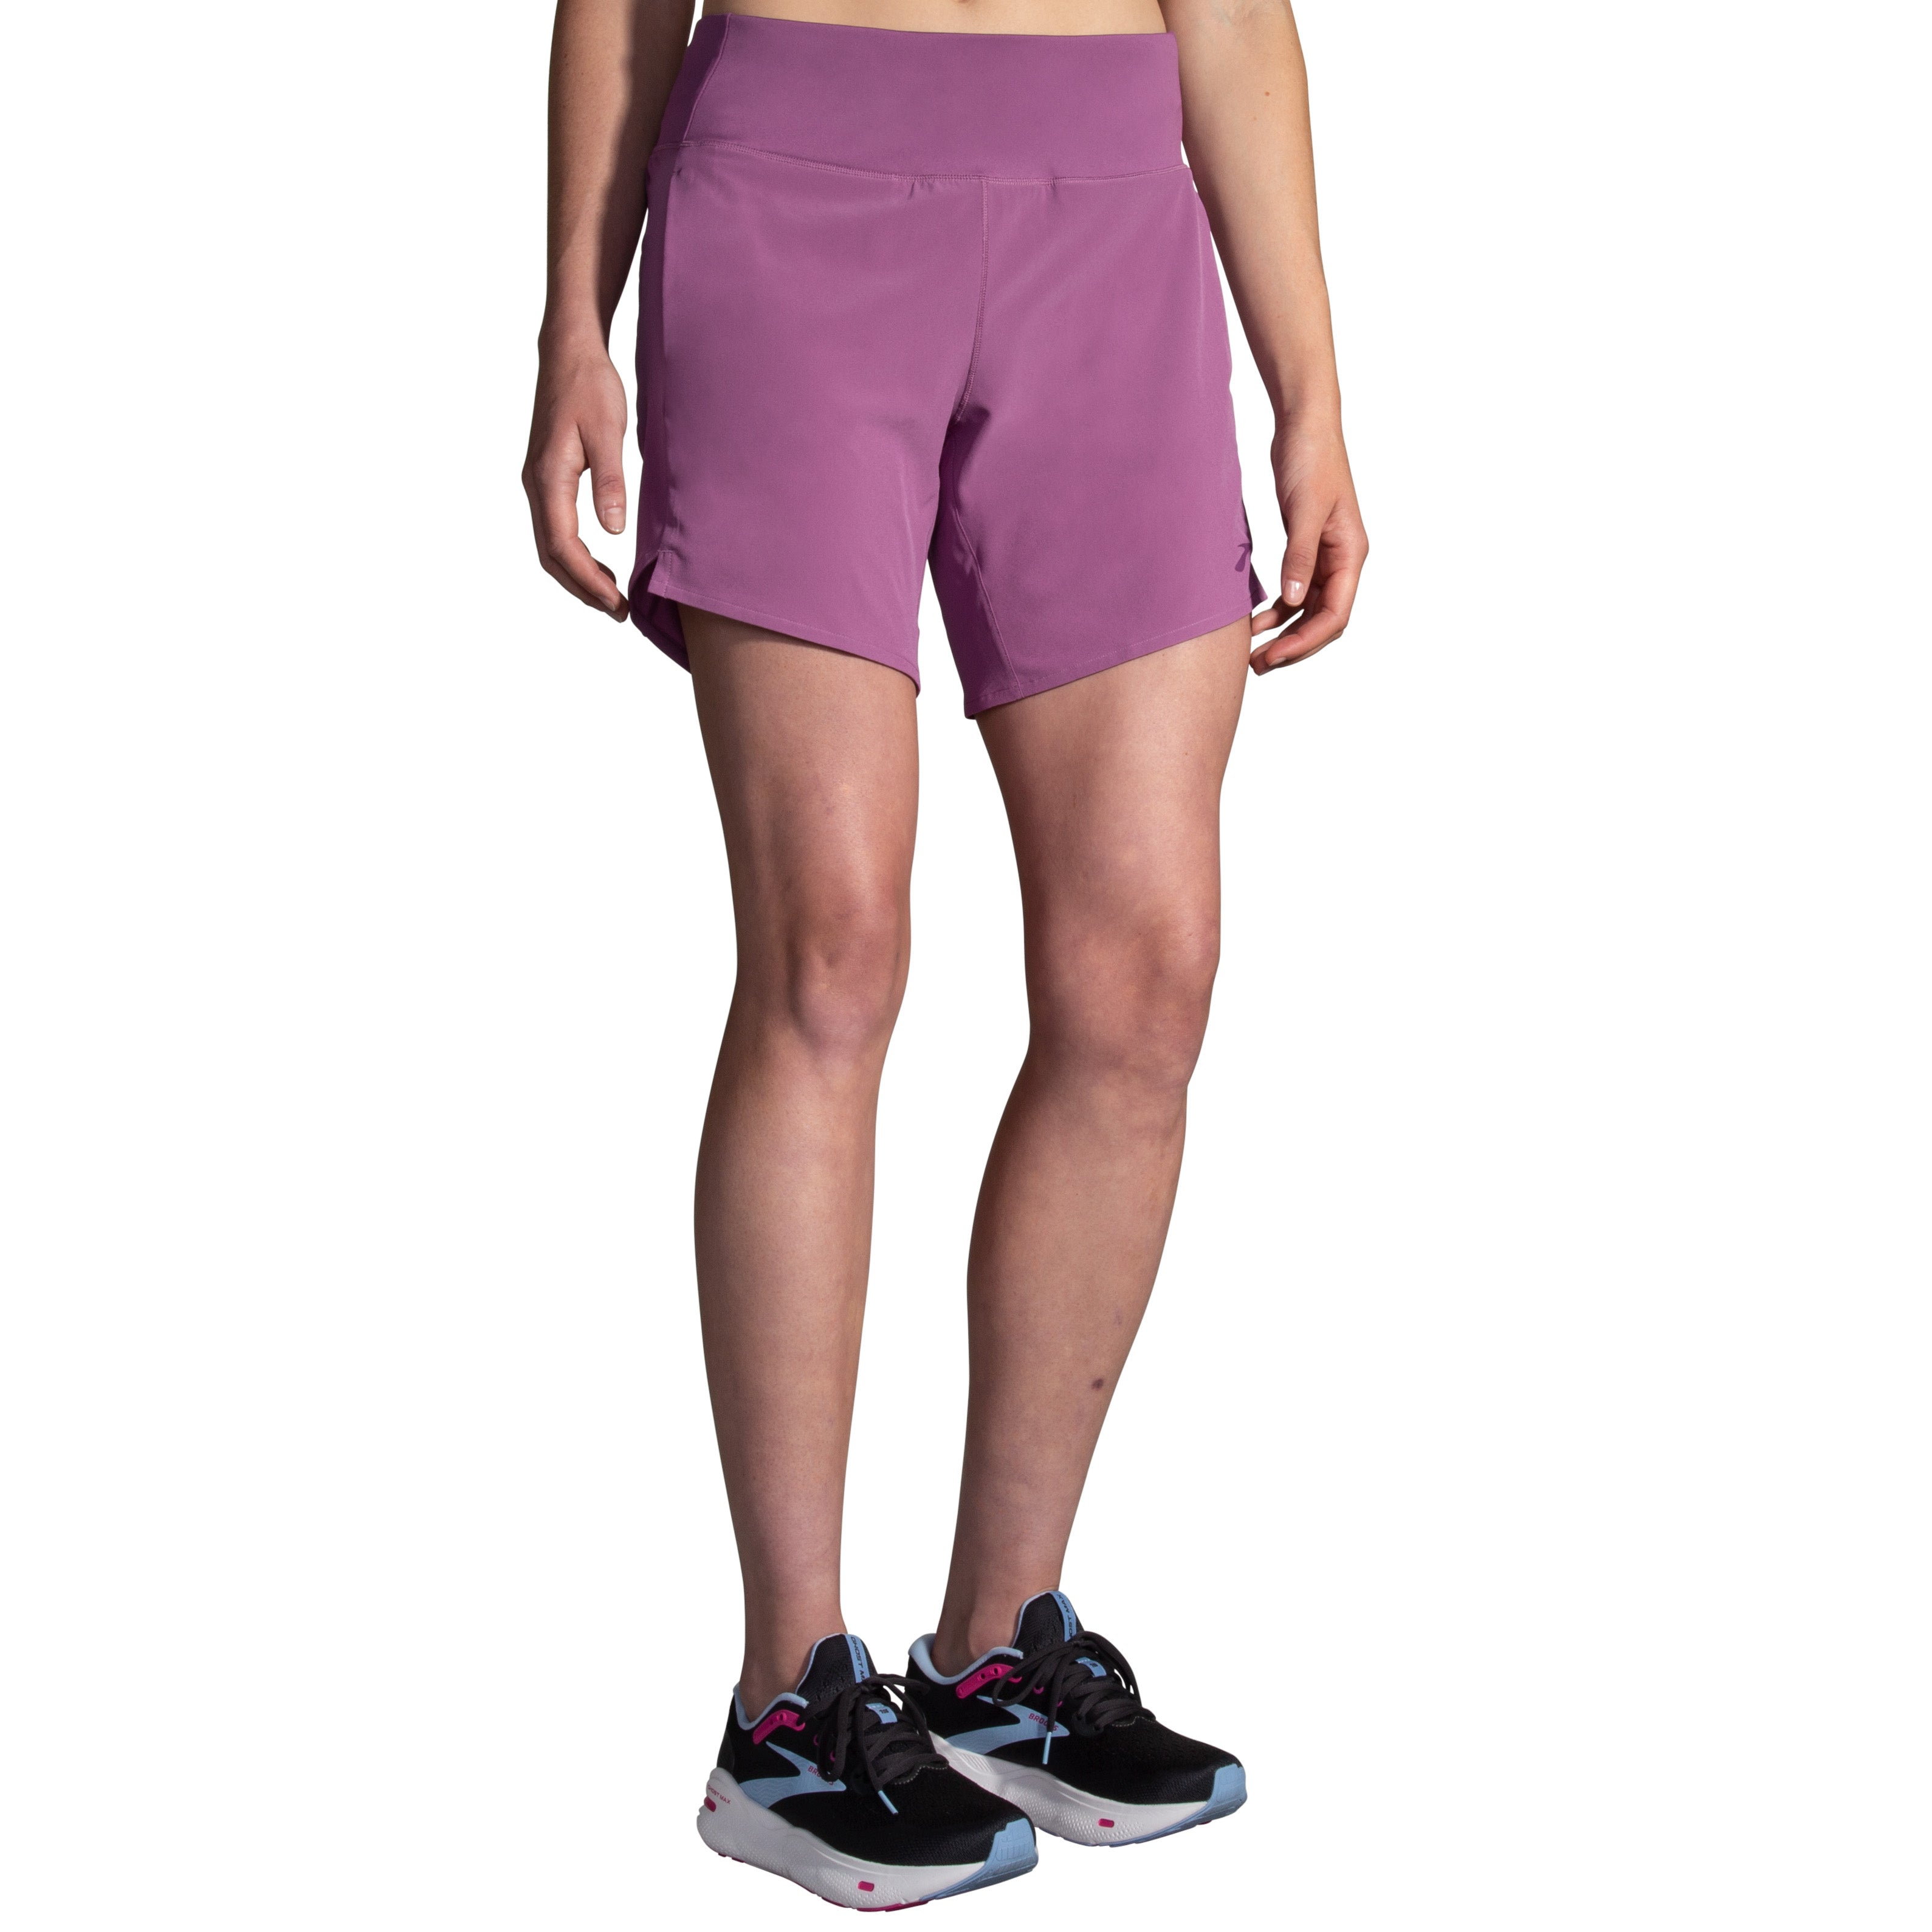 Chaser 7" Short Women's running bottoms